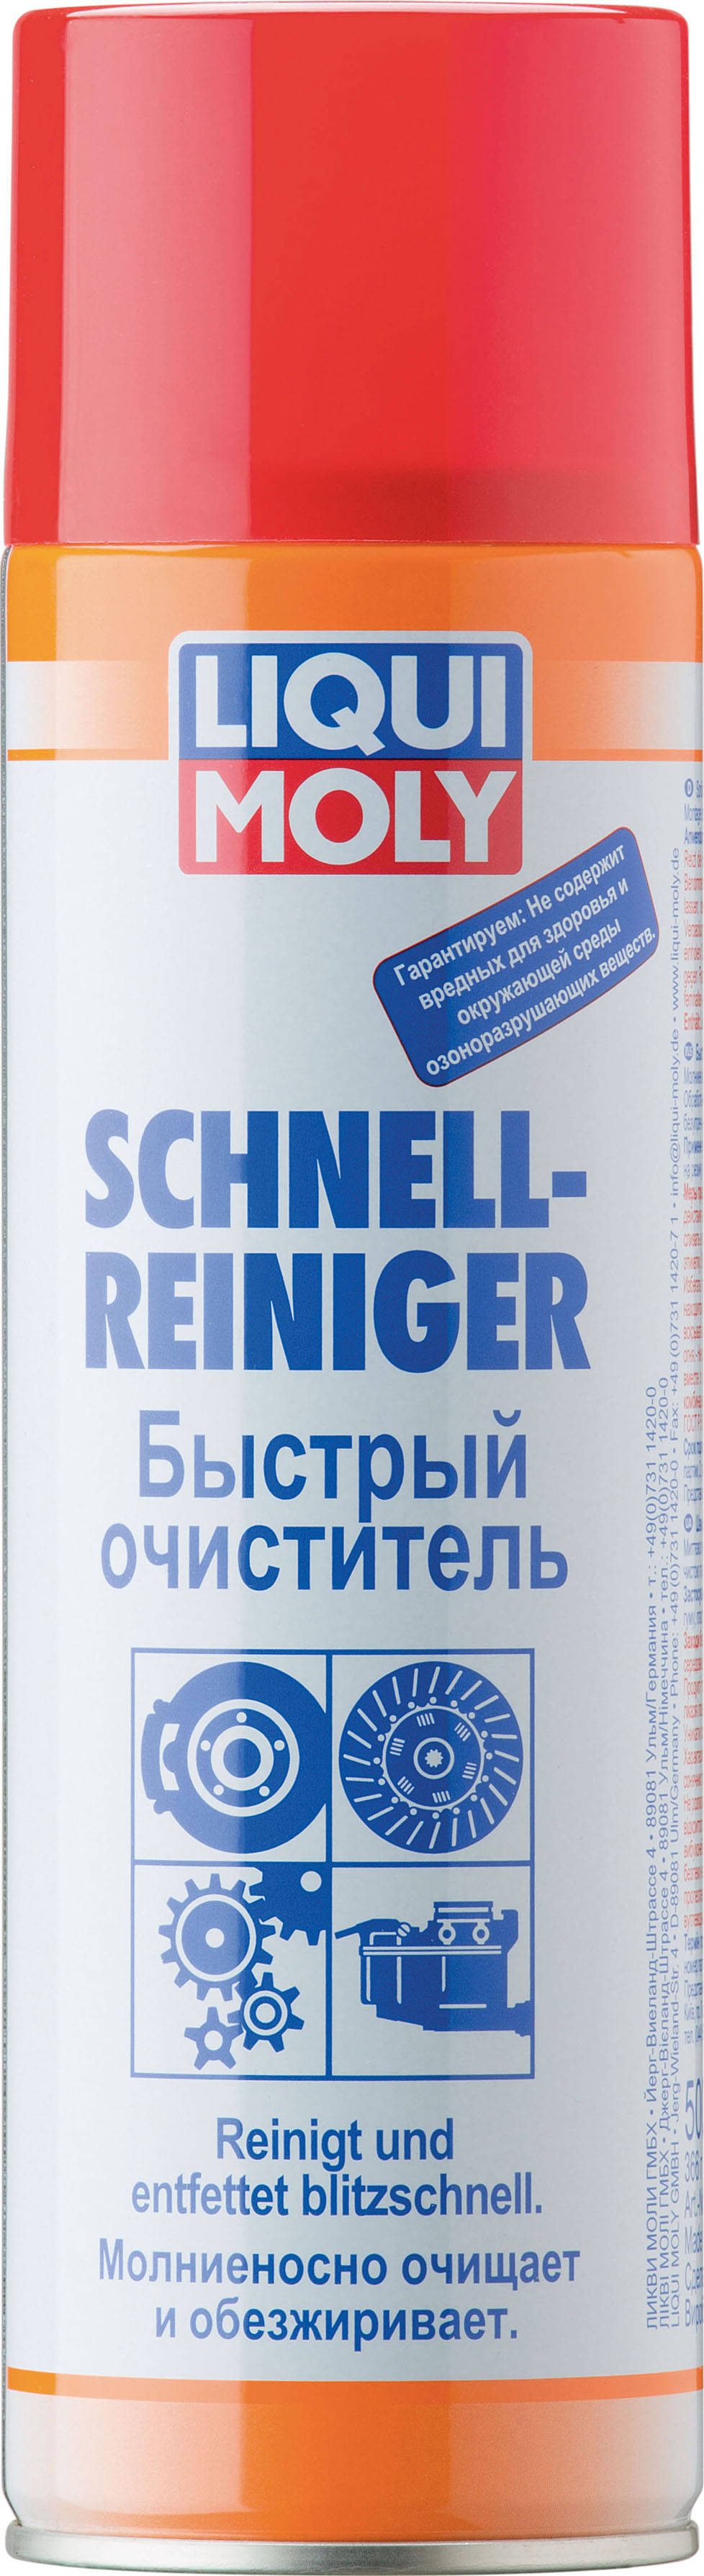 Очиститель быстрый Schnell-Rein. (0,5л) - Liqui Moly 1900